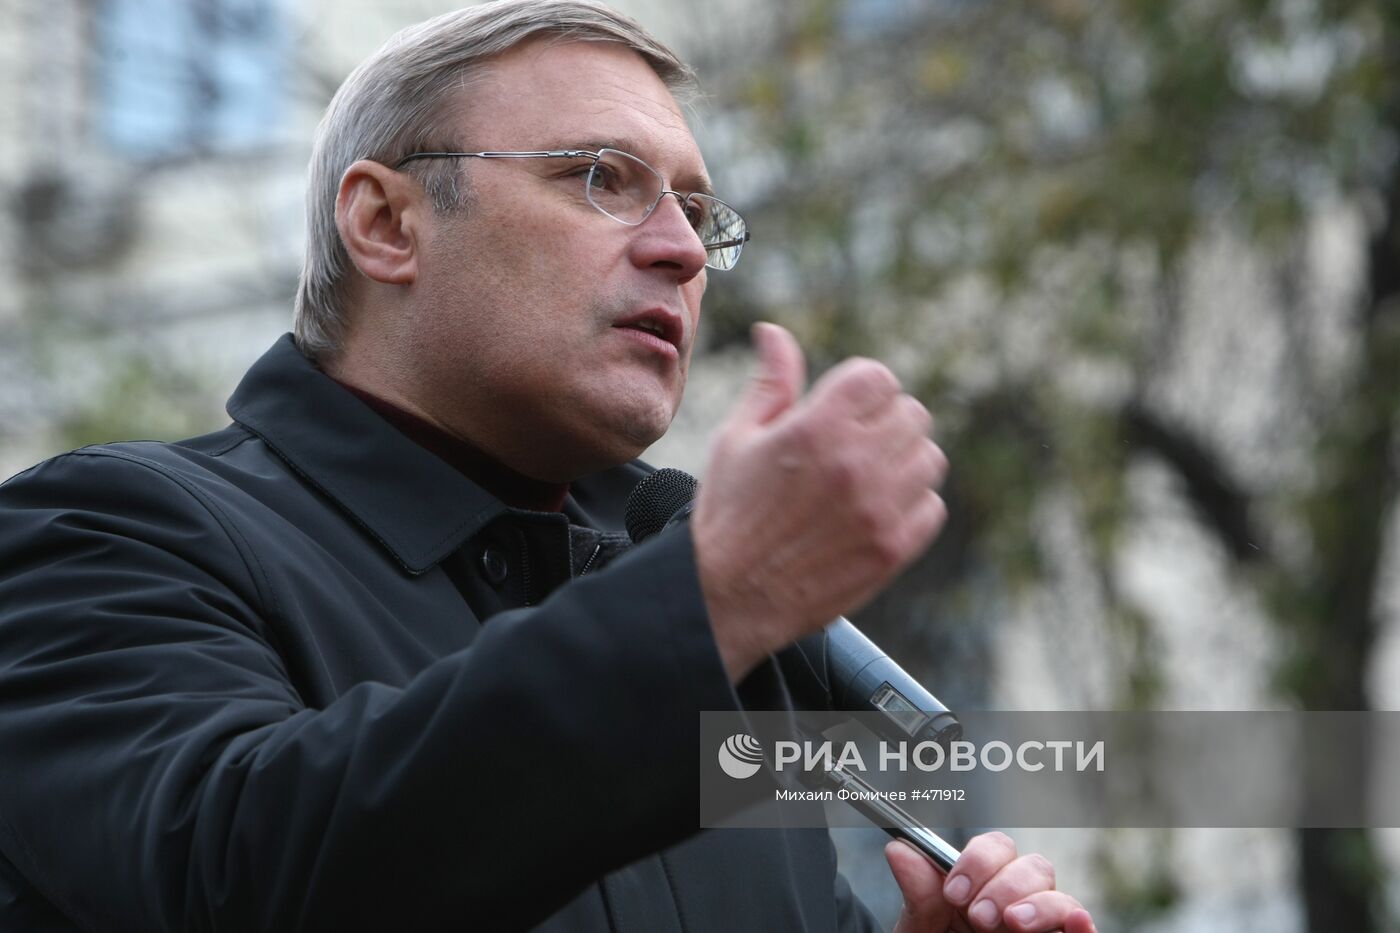 Михаил Касьянов на митинге памяти Анны Политковской в Москве